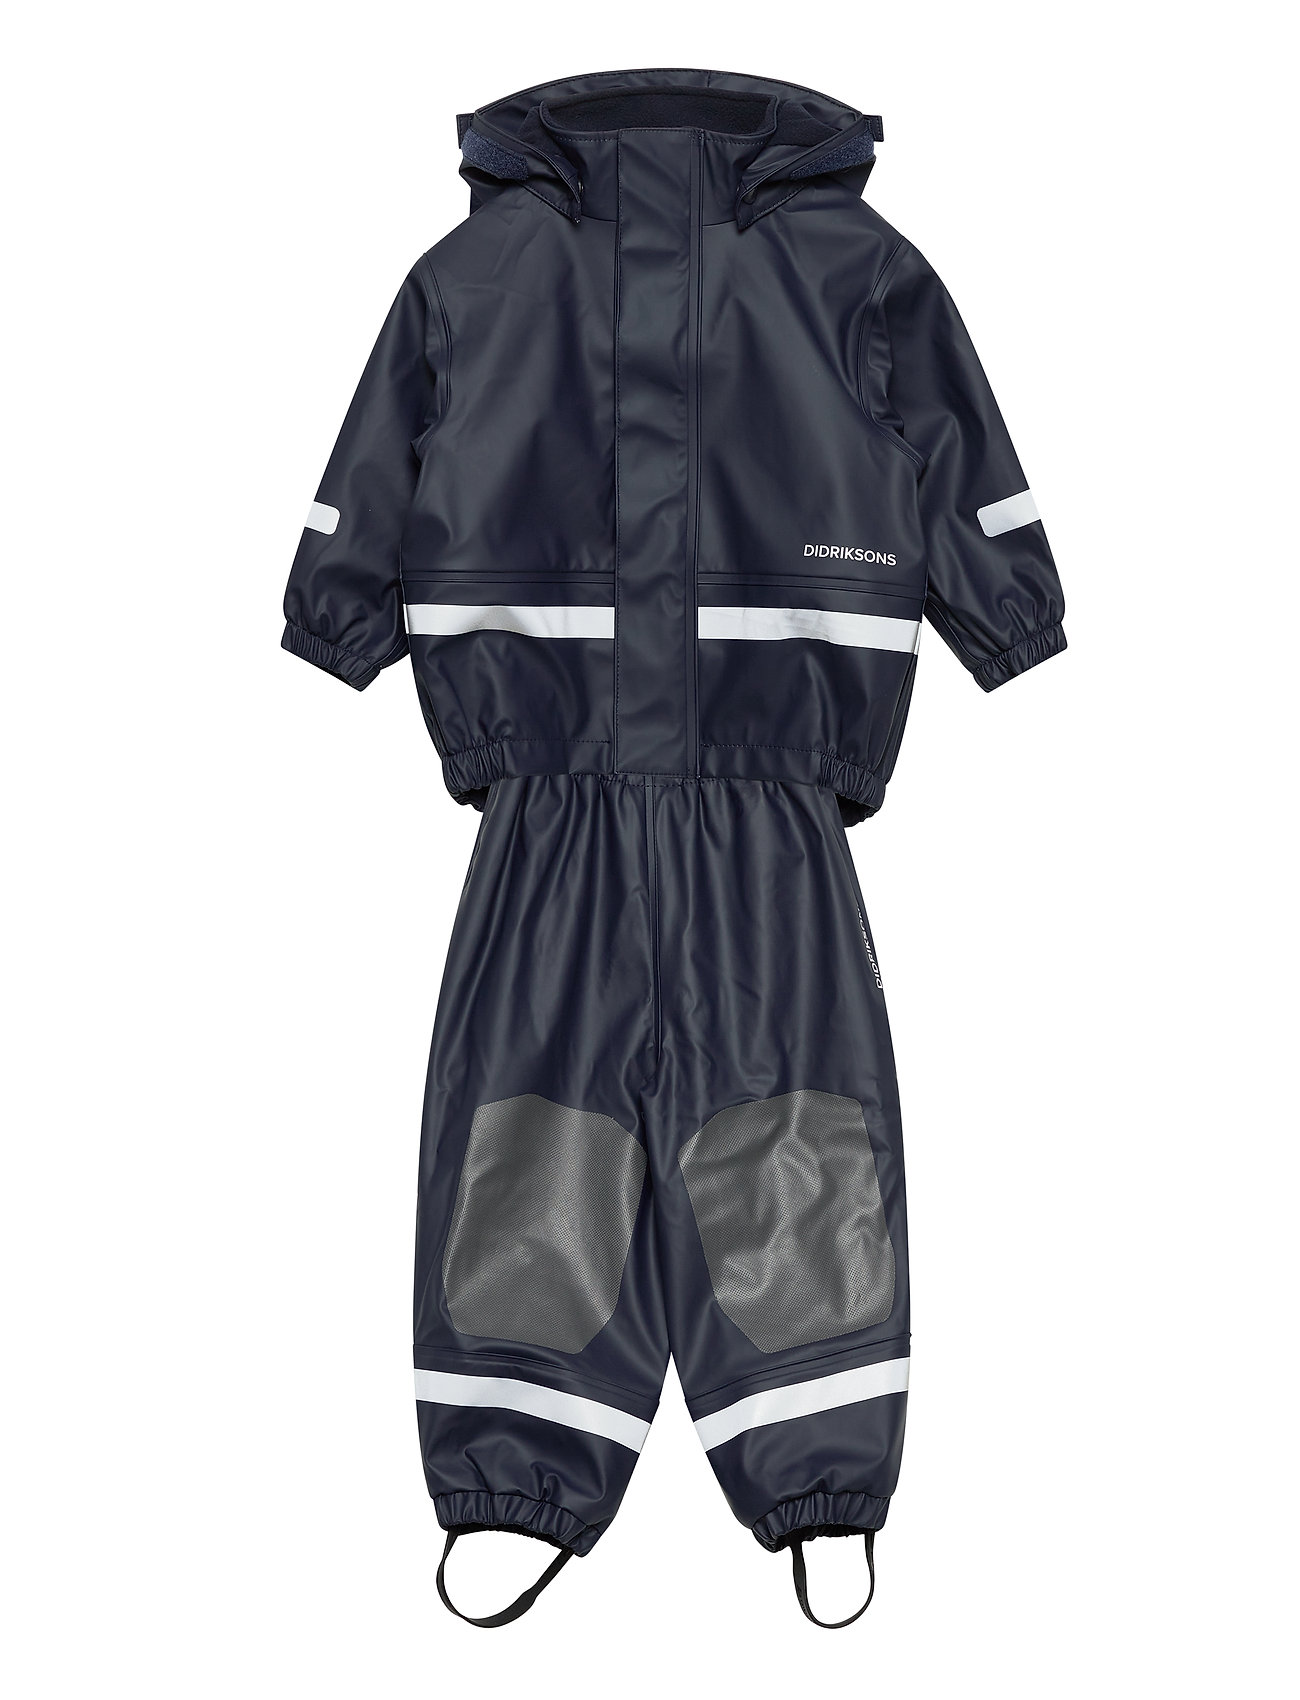 Lilla Boardman Kids Set Outerwear Rainwear Sets Coveralls Blå Didriksons langærmede heldragter for børn - Pashion.dk